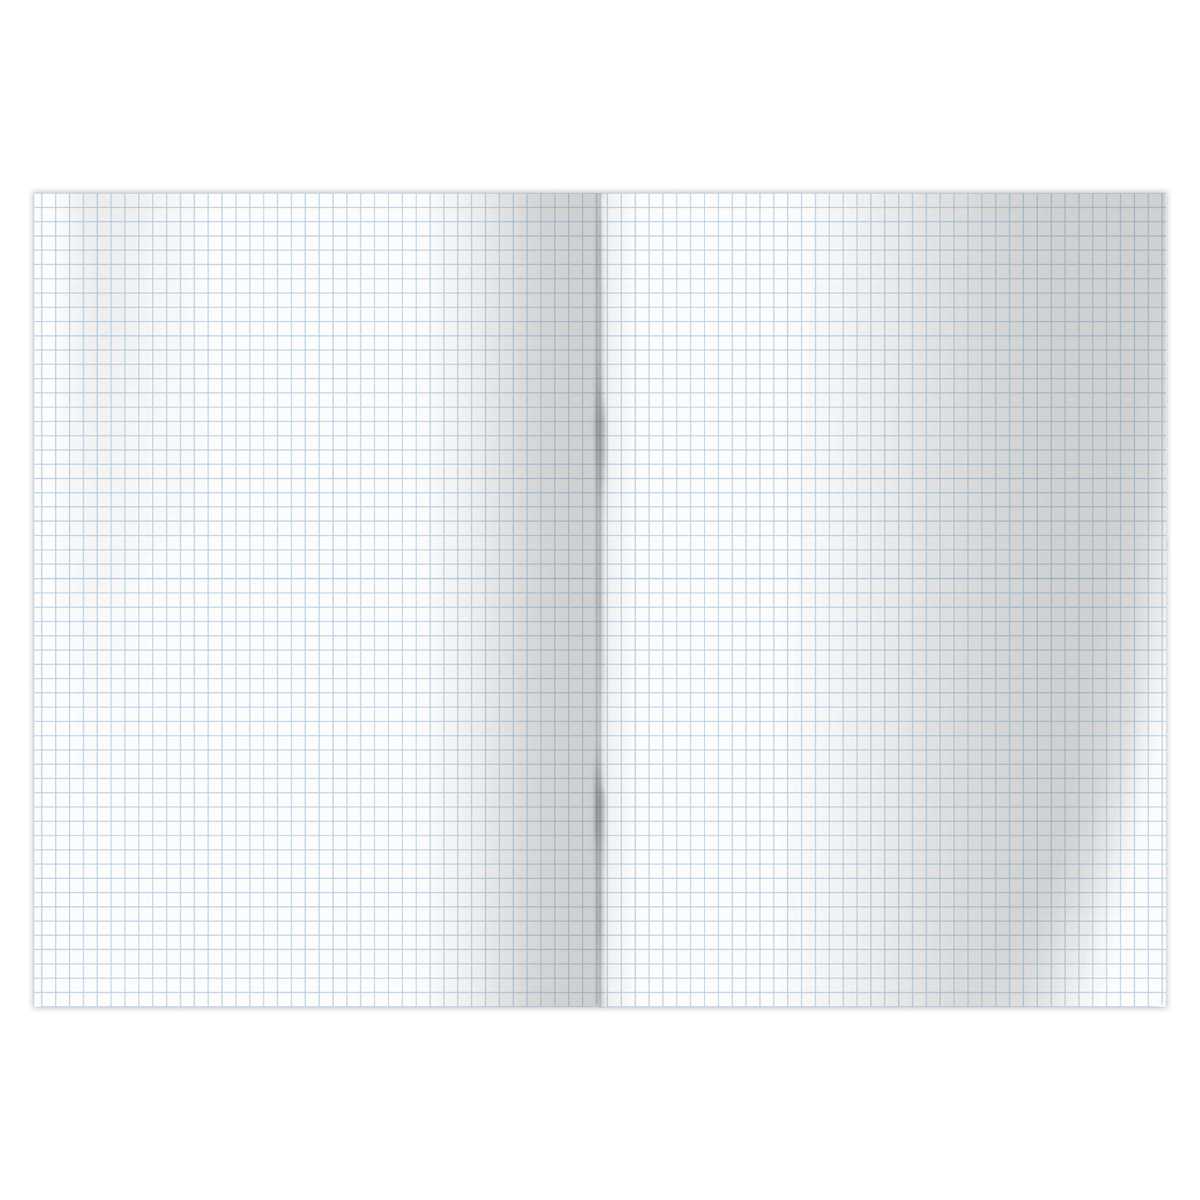 картинка Книга учета, А4, 96 л, клетка, черный, блок офсет, OfficeSpace, 315597 от магазина Альфанит в Кунгуре